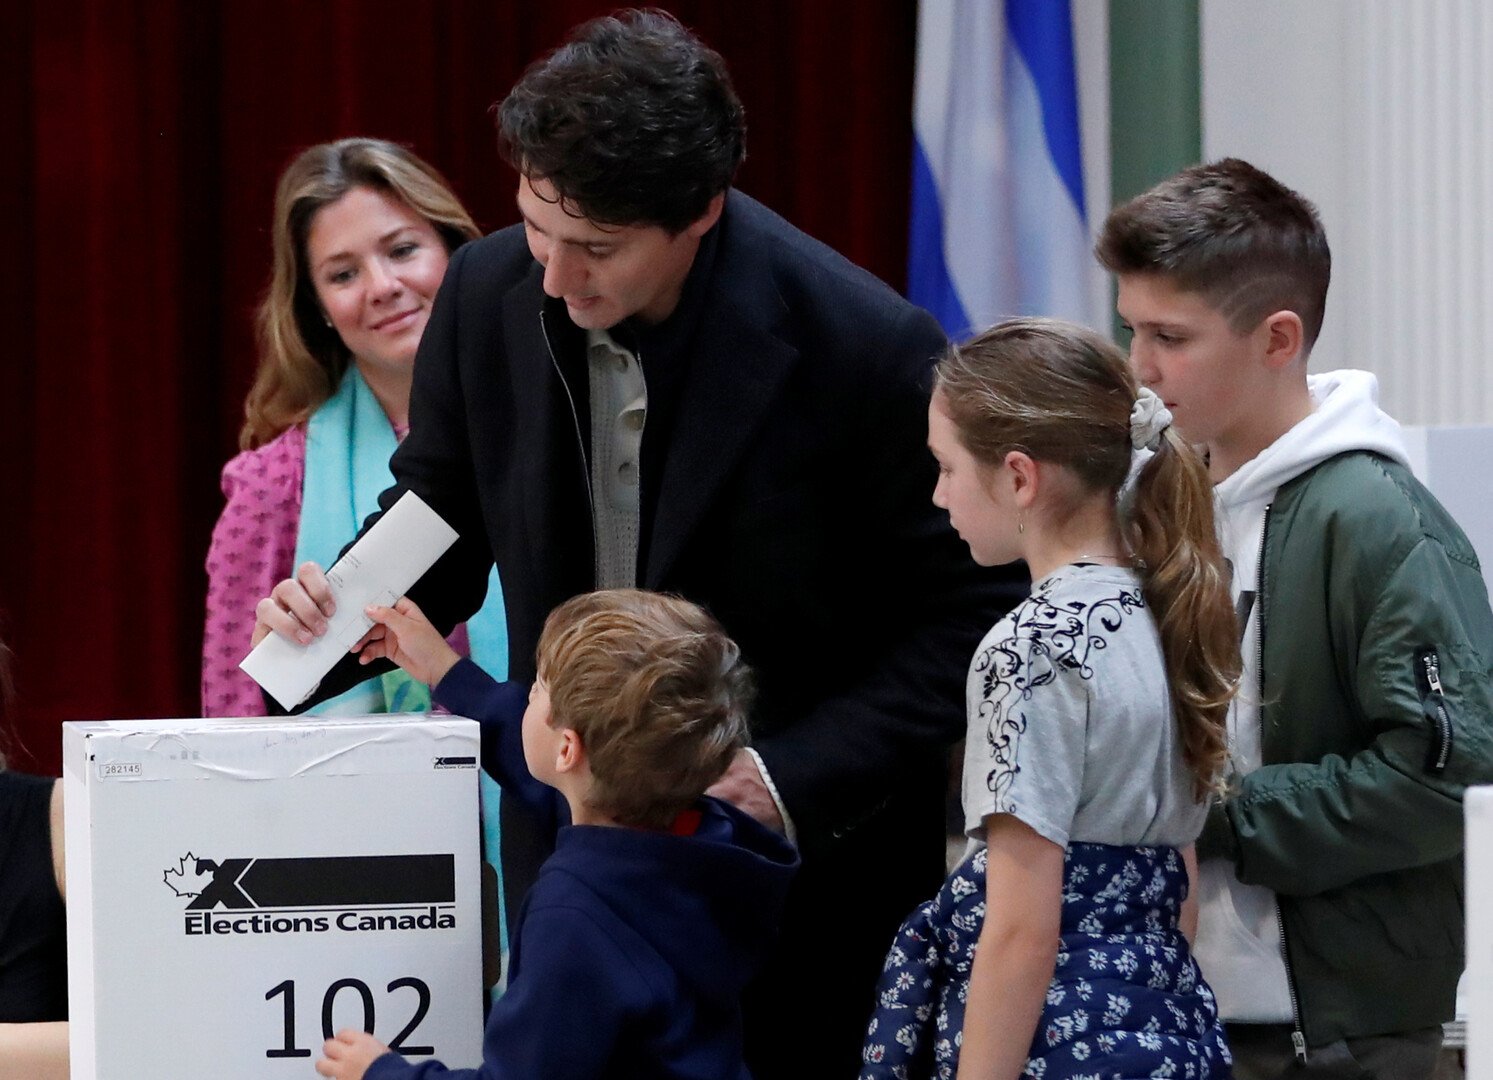 فوز متوقع لترودو في انتخابات كندا يتيح له تشكيل حكومة أقلية